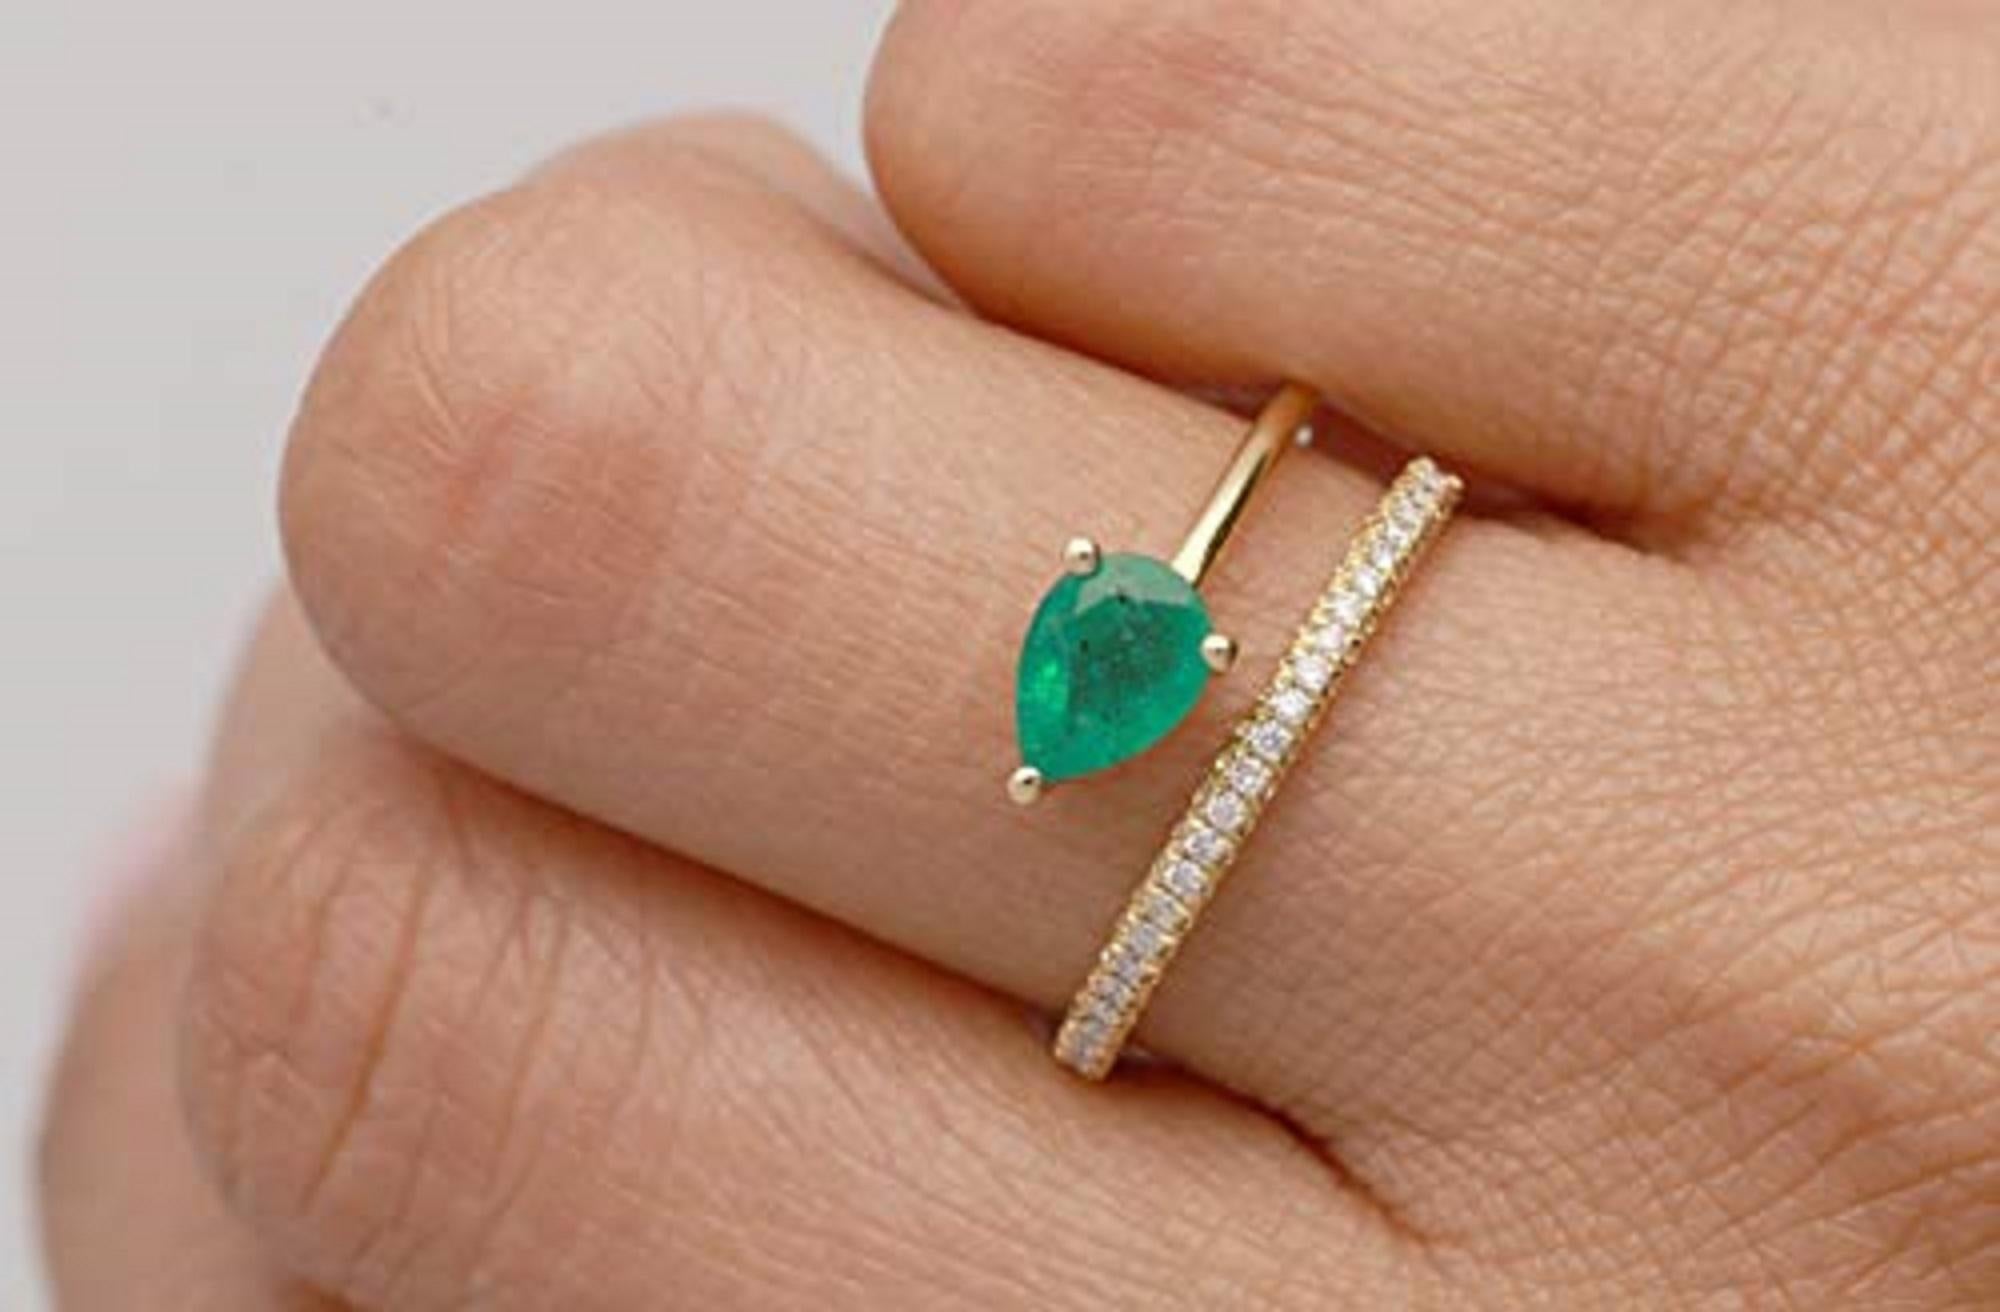 Ein atemberaubender grüner Smaragd ist perfekt in der Mitte dieses Rings ausbalanciert, wobei sich das glänzende Band darüber und darunter bewegt. Das Schmuckstück ist auf einer Seite mit funkelnden weißen Diamanten besetzt, und das 18-karätige